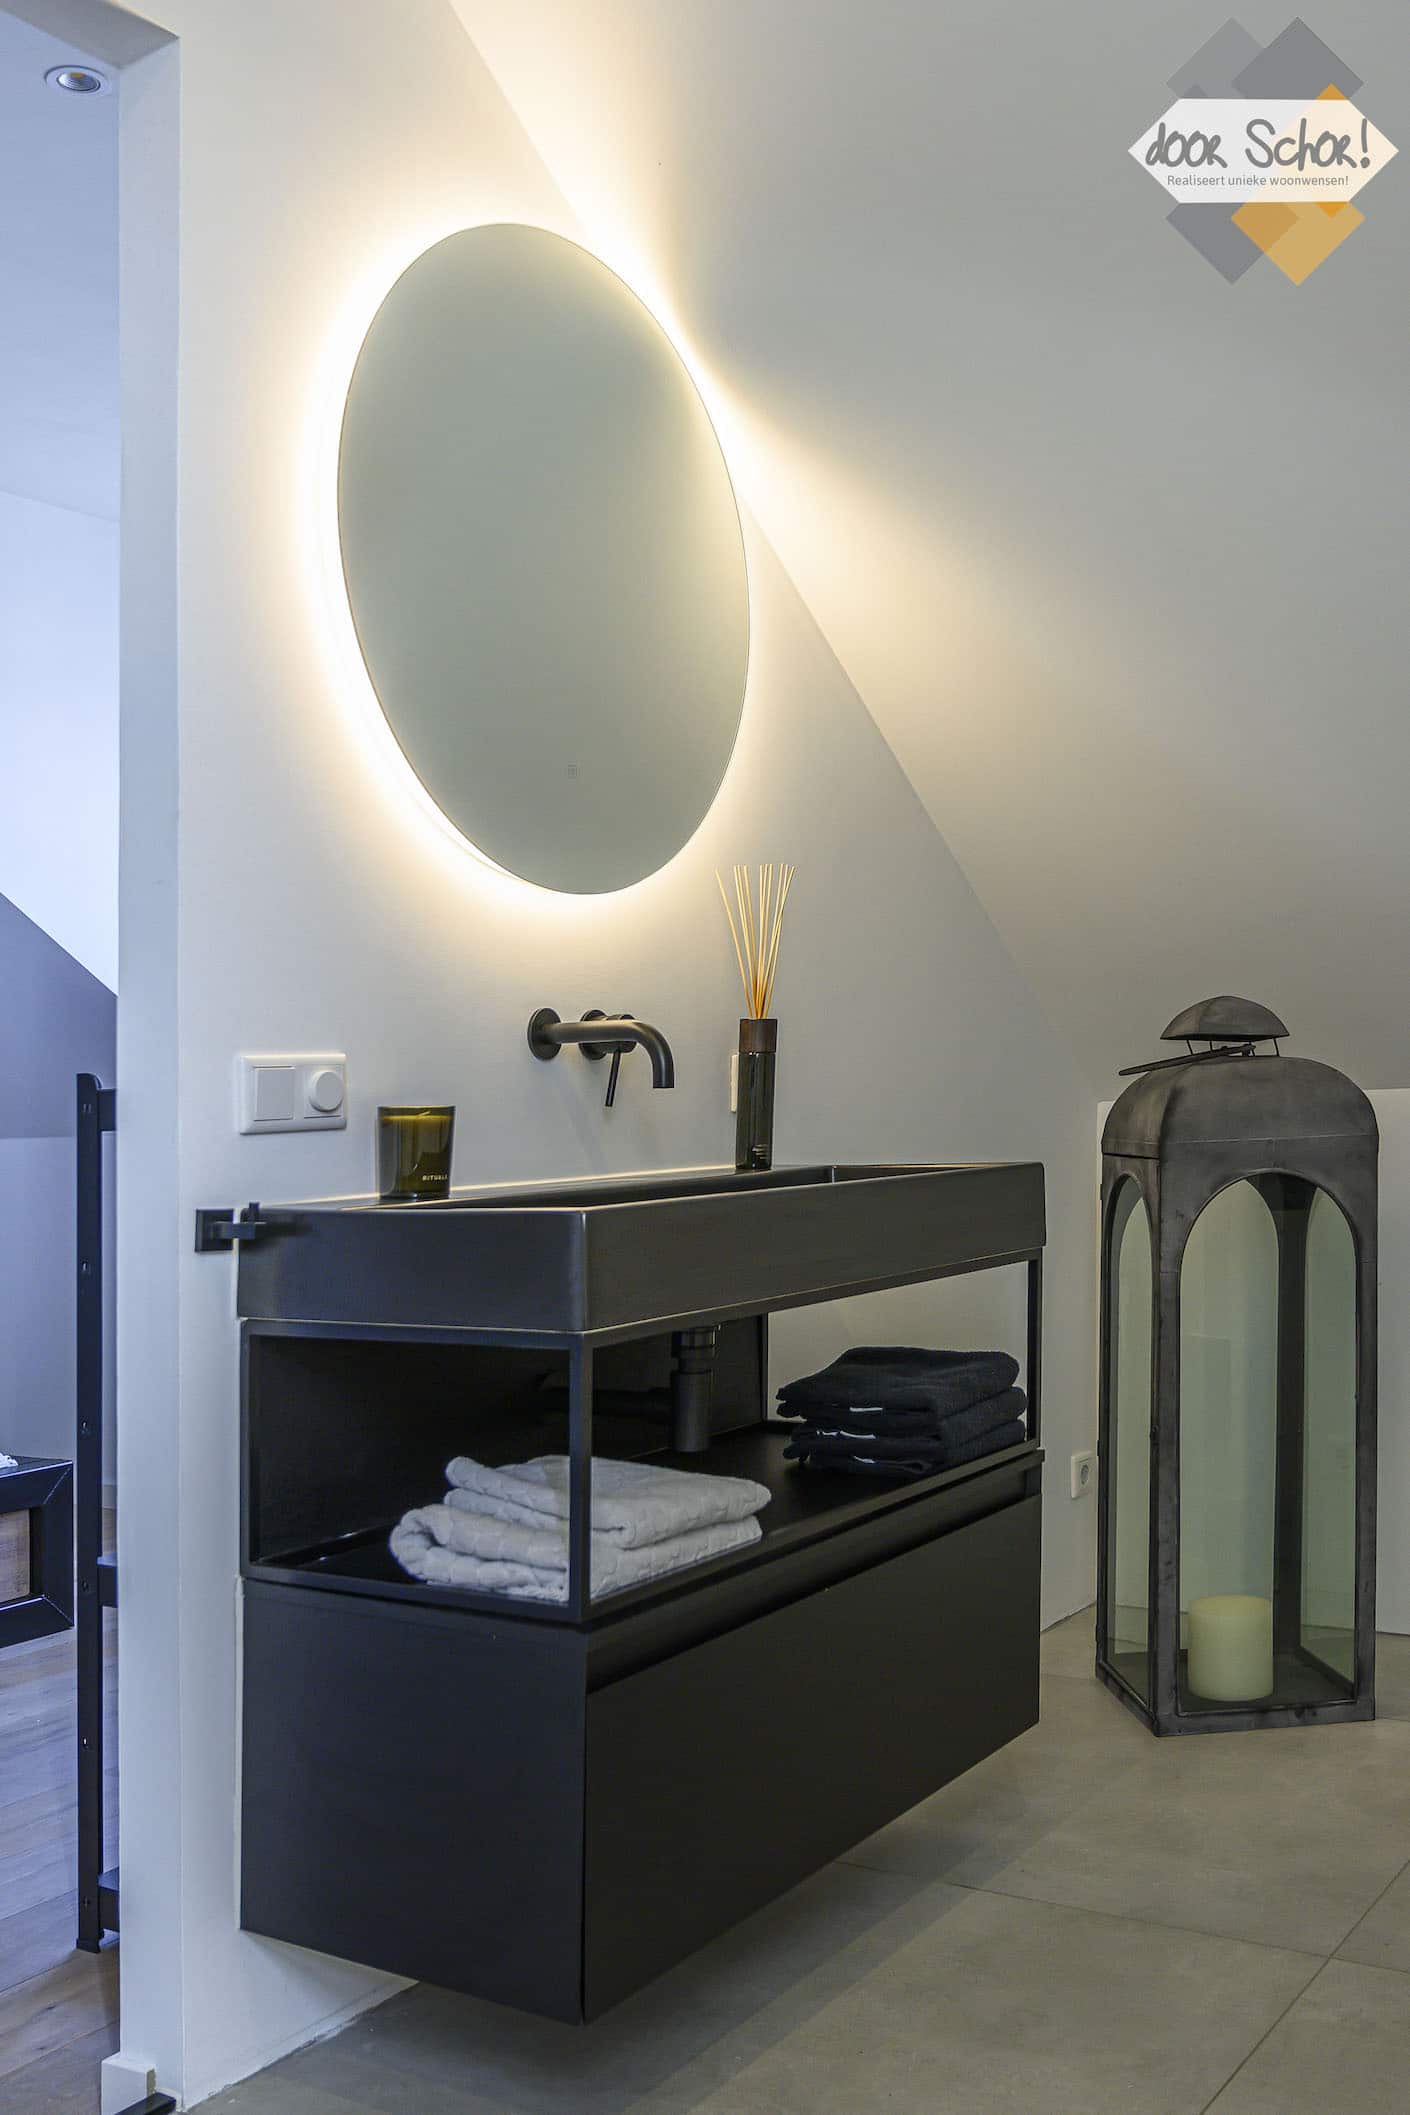 Zwart badkamer meubel met een ronde spiegels met verlichting erachter